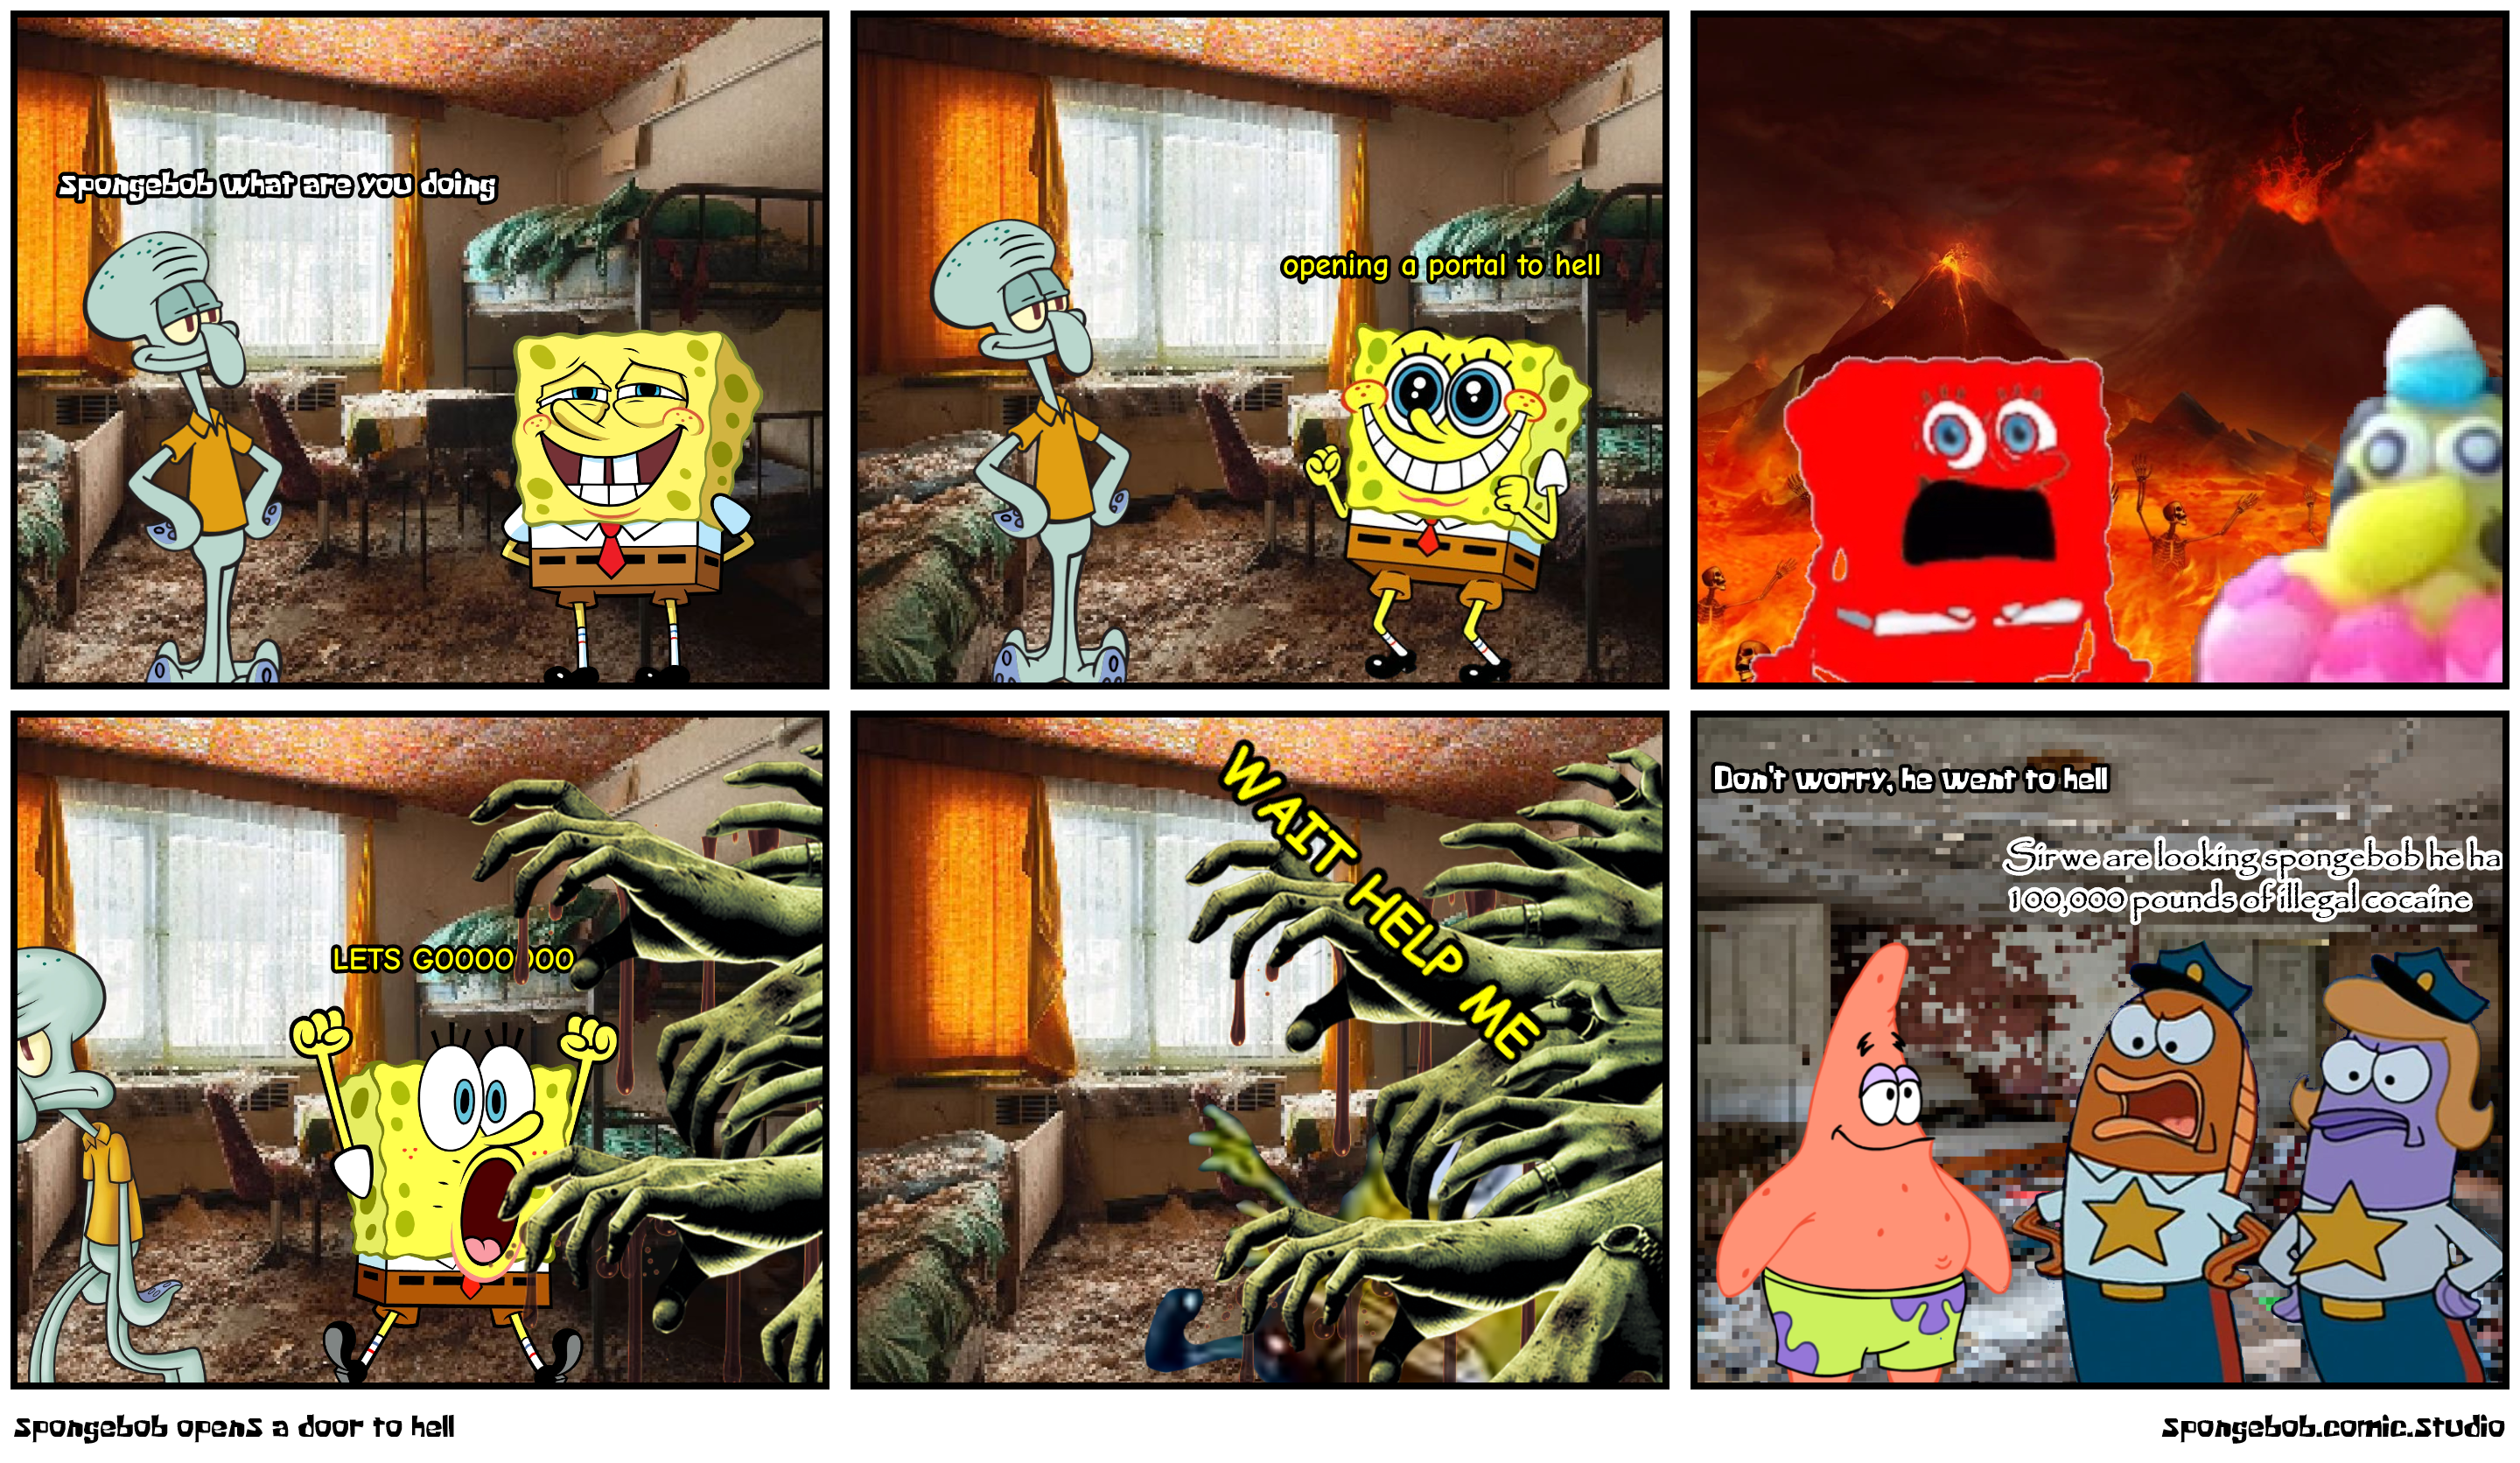 spongebob opens a door to hell